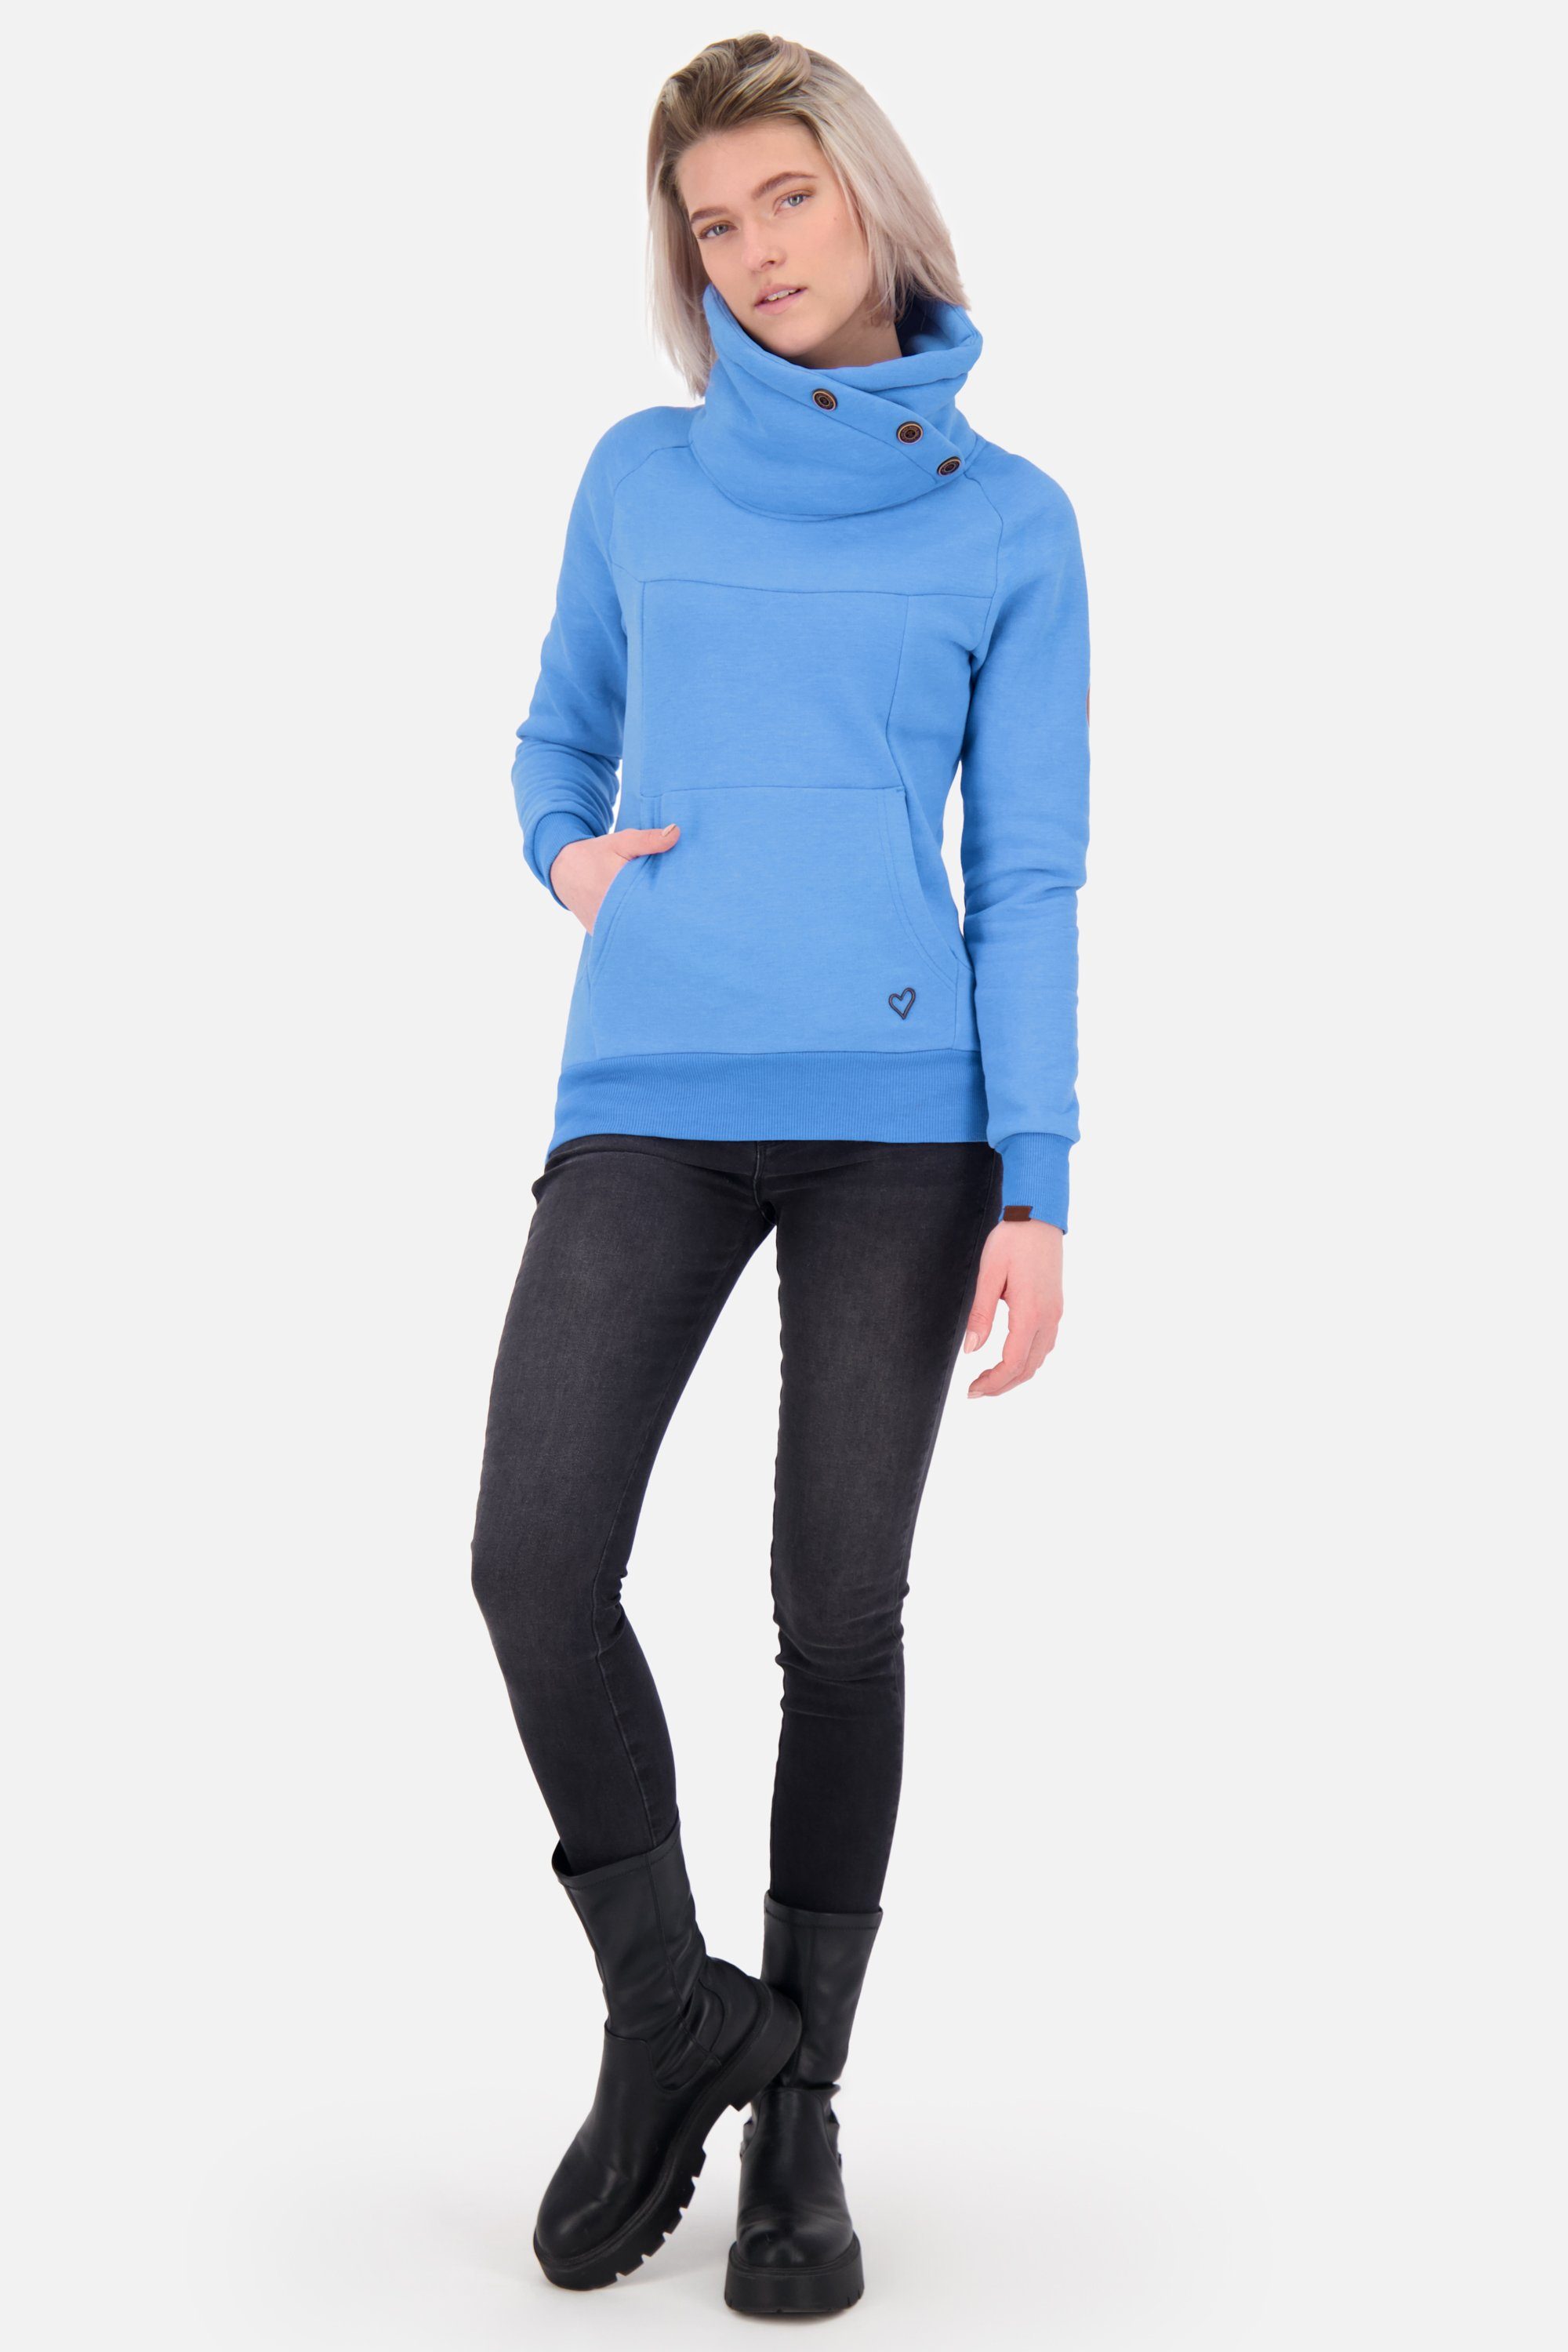 Damen Pullover A Sweatshirt azure Alife Sweatshirt Kickin & VioletAK melange Rundhalspullover,